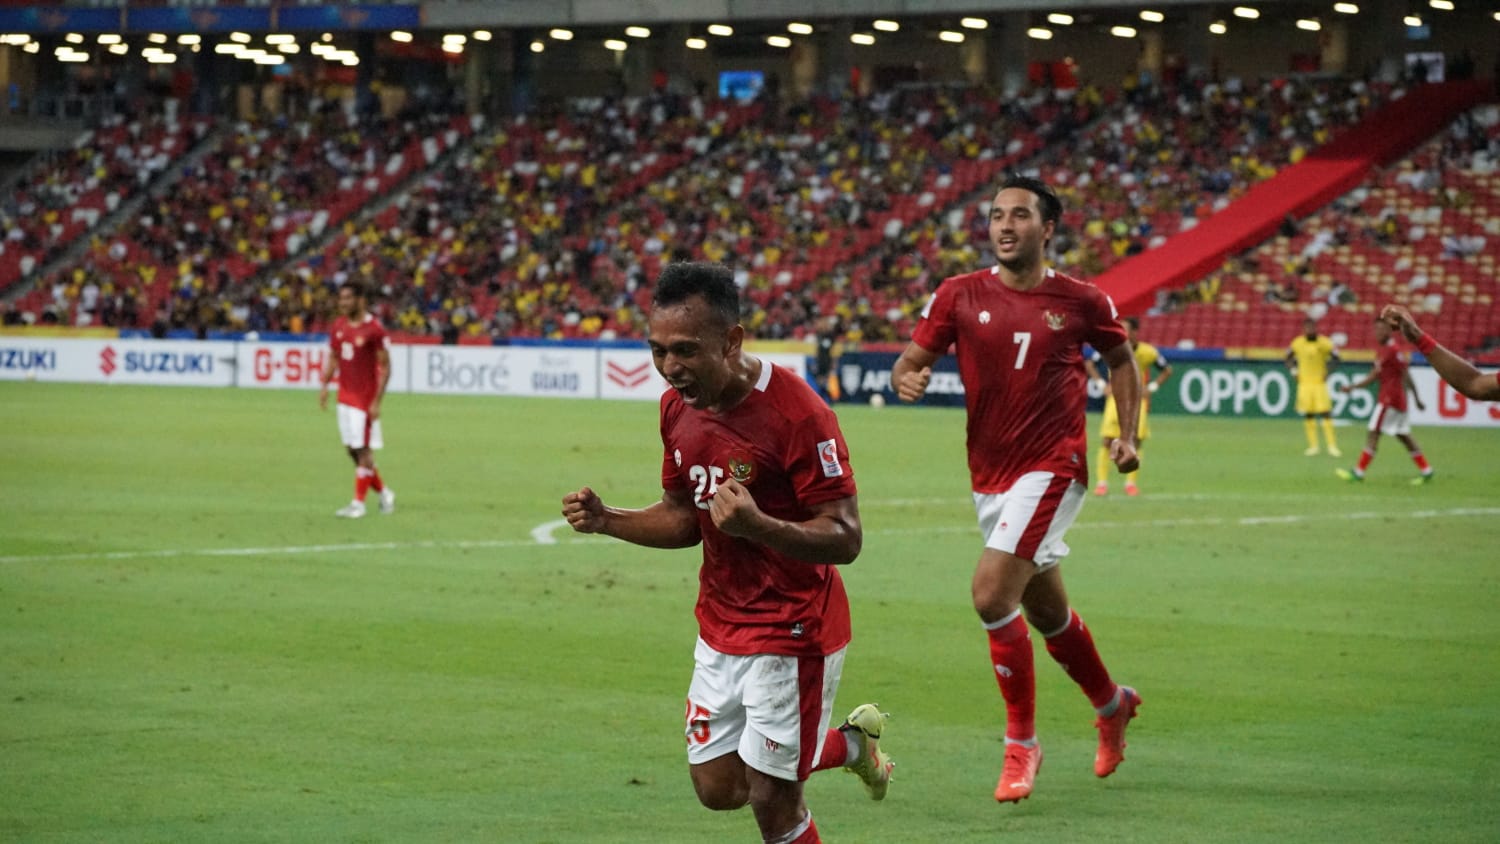 Ironi Timnas Indonesia di Piala AFF 2020: Tim Paling Produktif meski Strikernya Mandul